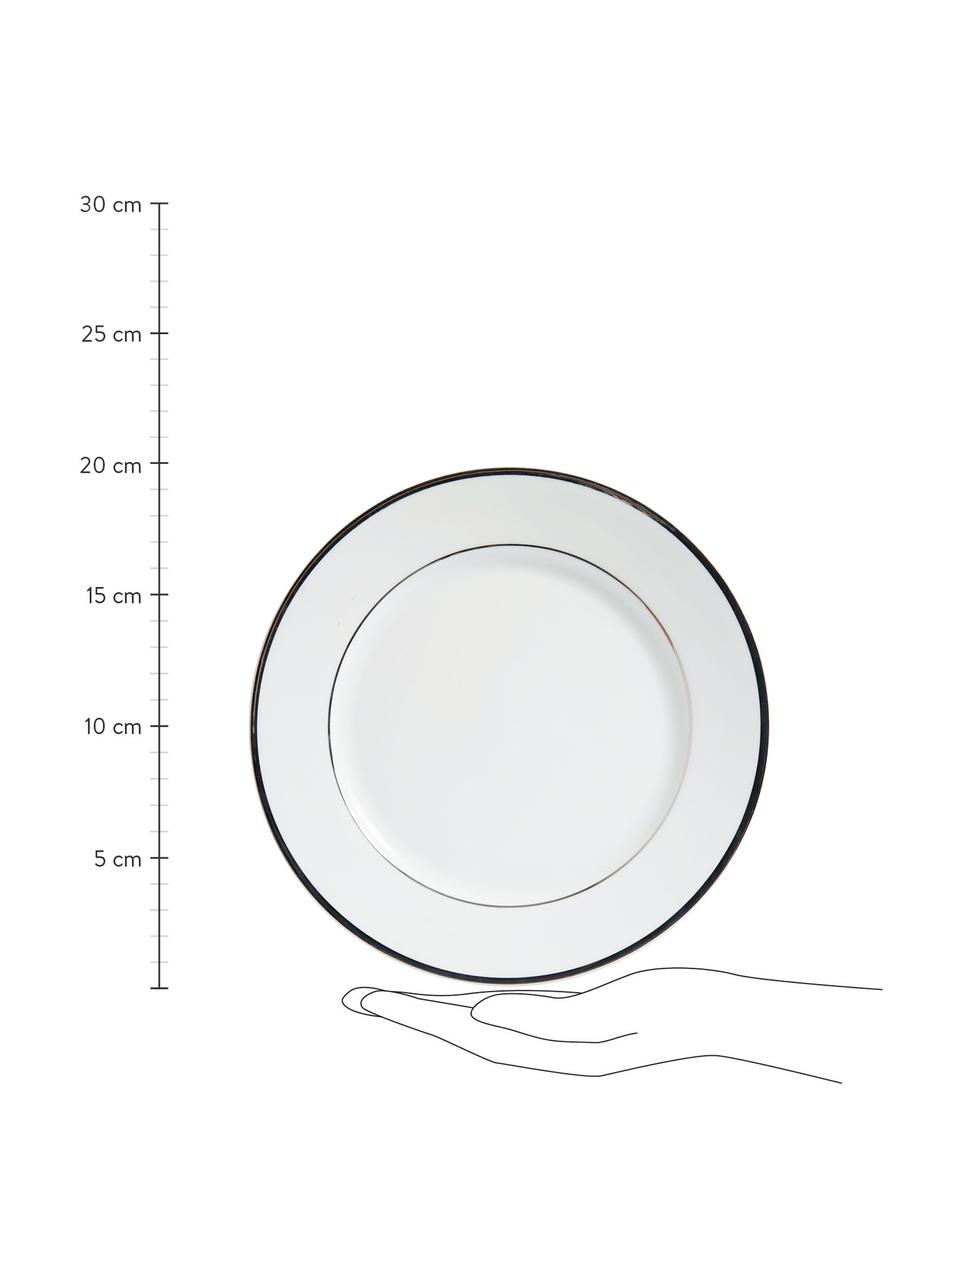 Porseleinen ontbijtborden Ginger met zilveren rand rand, 6 stuks, Porselein, Wit, zilverkleurig, Ø 20 cm